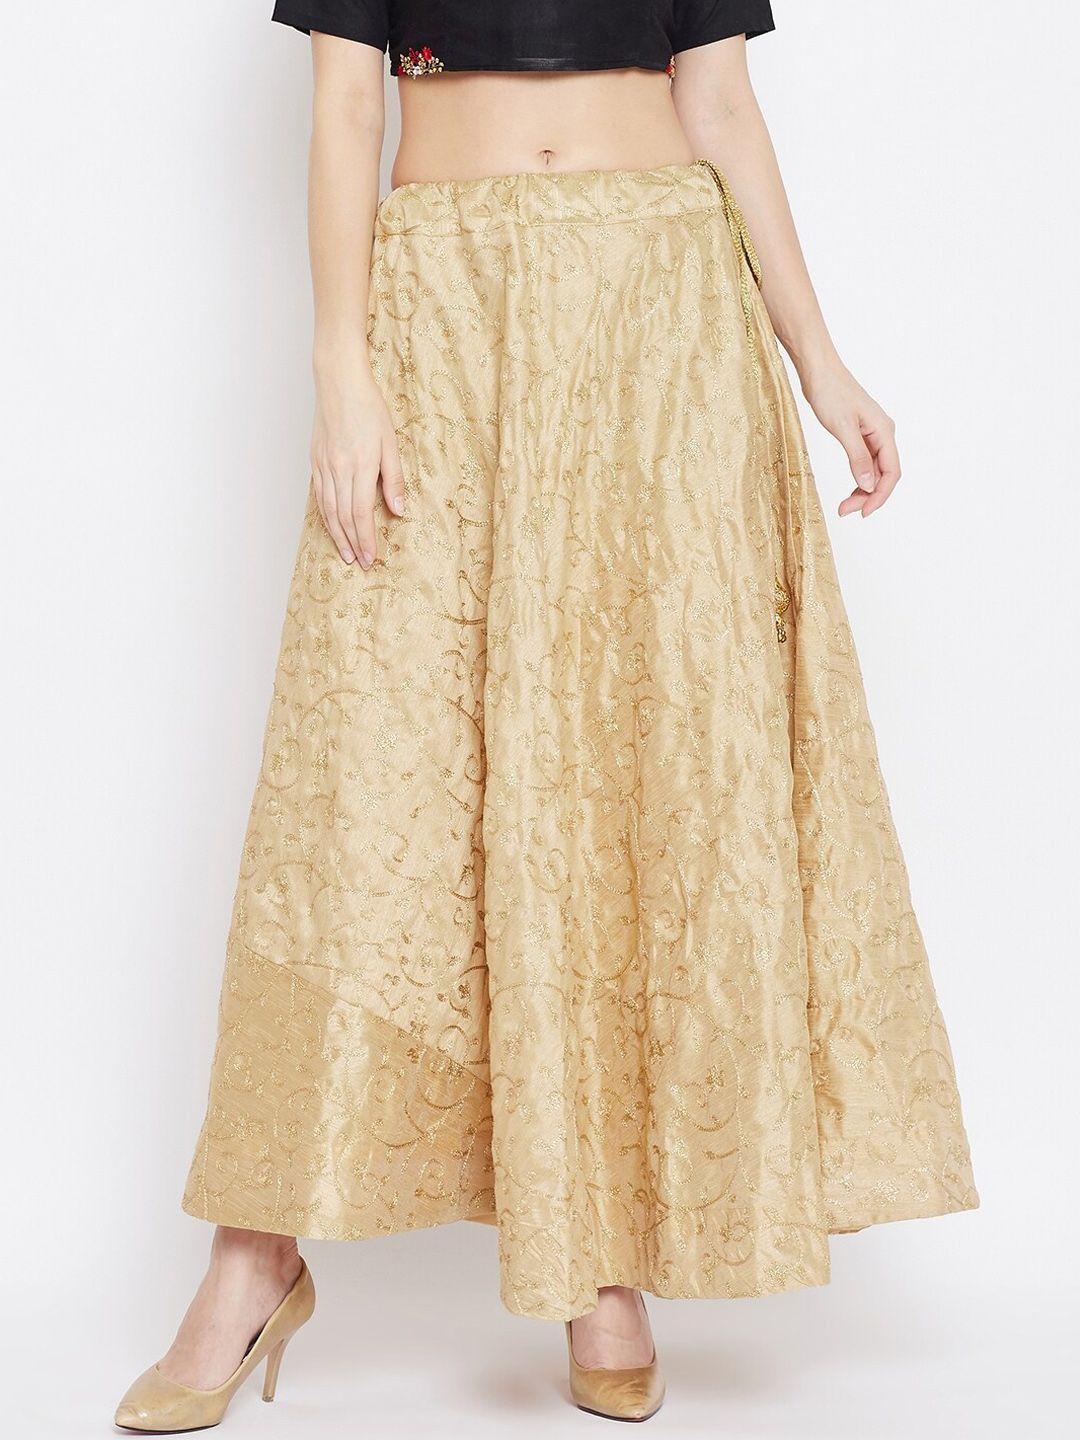 clora creation women golden embroidered maxi skirt